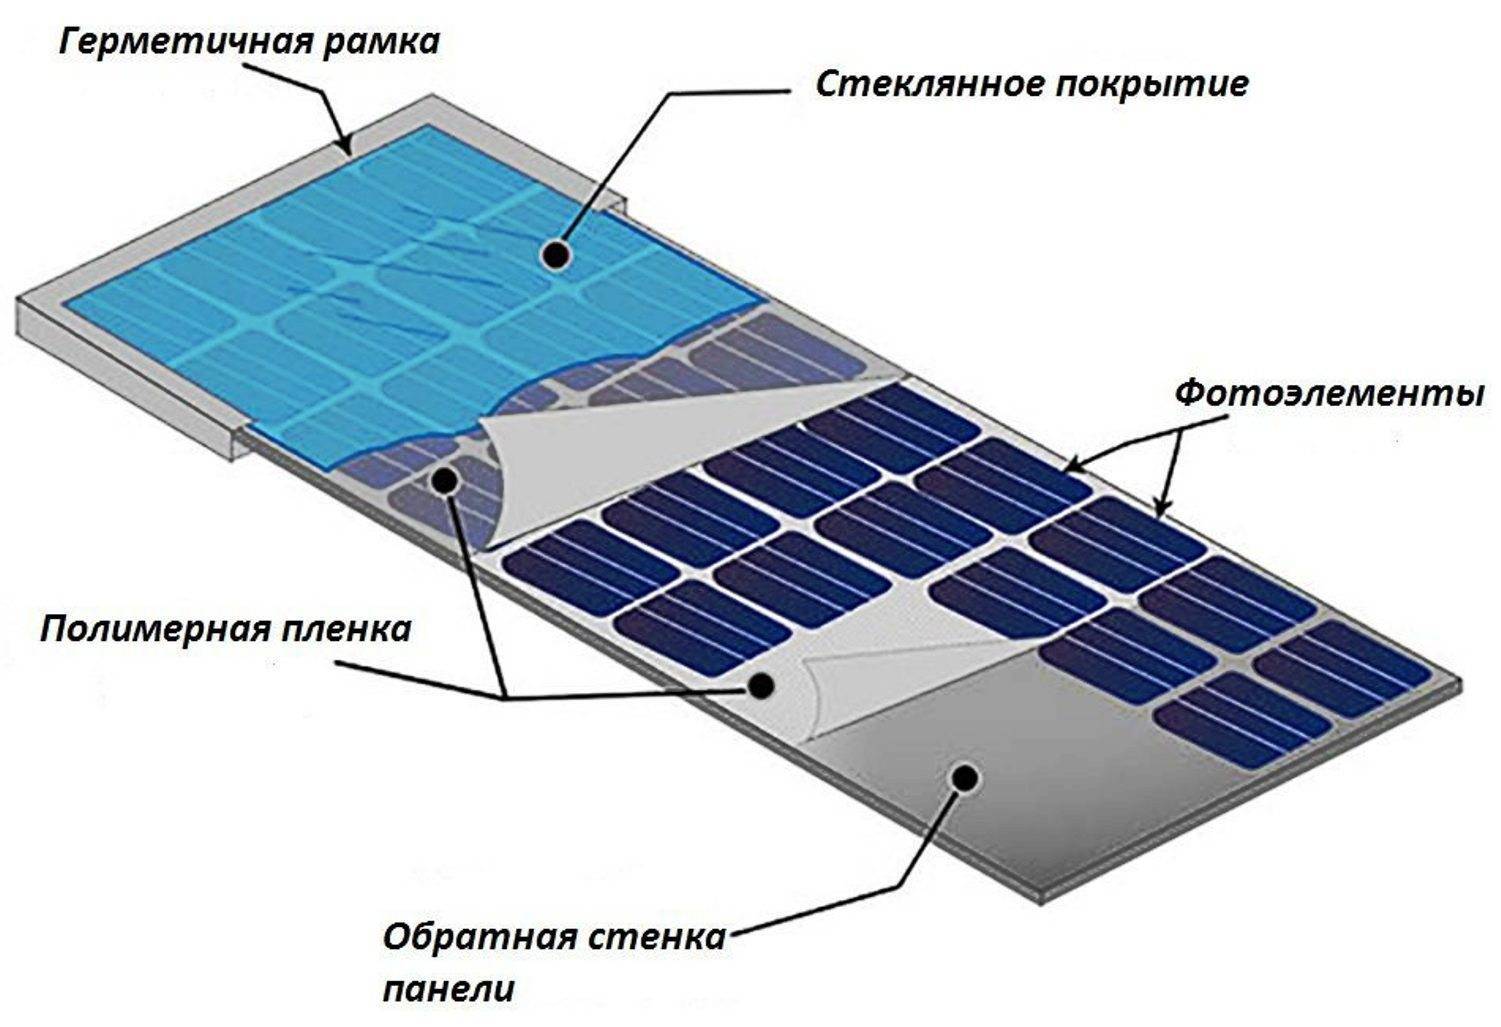 Сравнительный обзор различных видов солнечных батарей - точка j